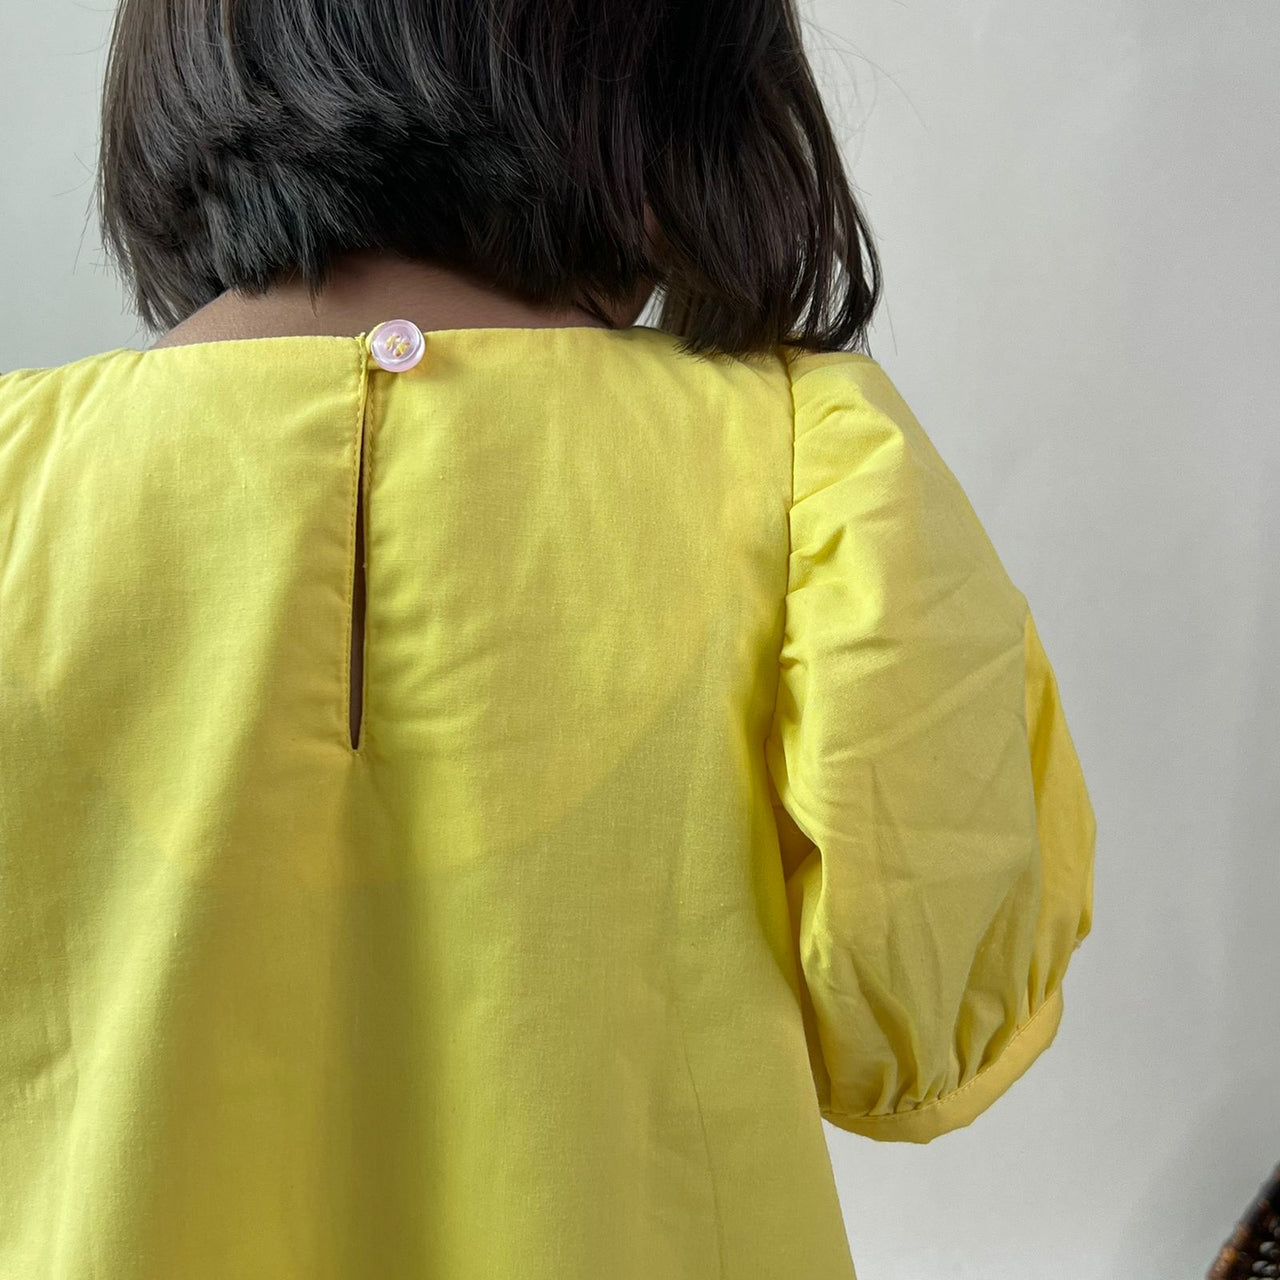 ArthLife Yellow Flower Patch Casual Dress - Distacart